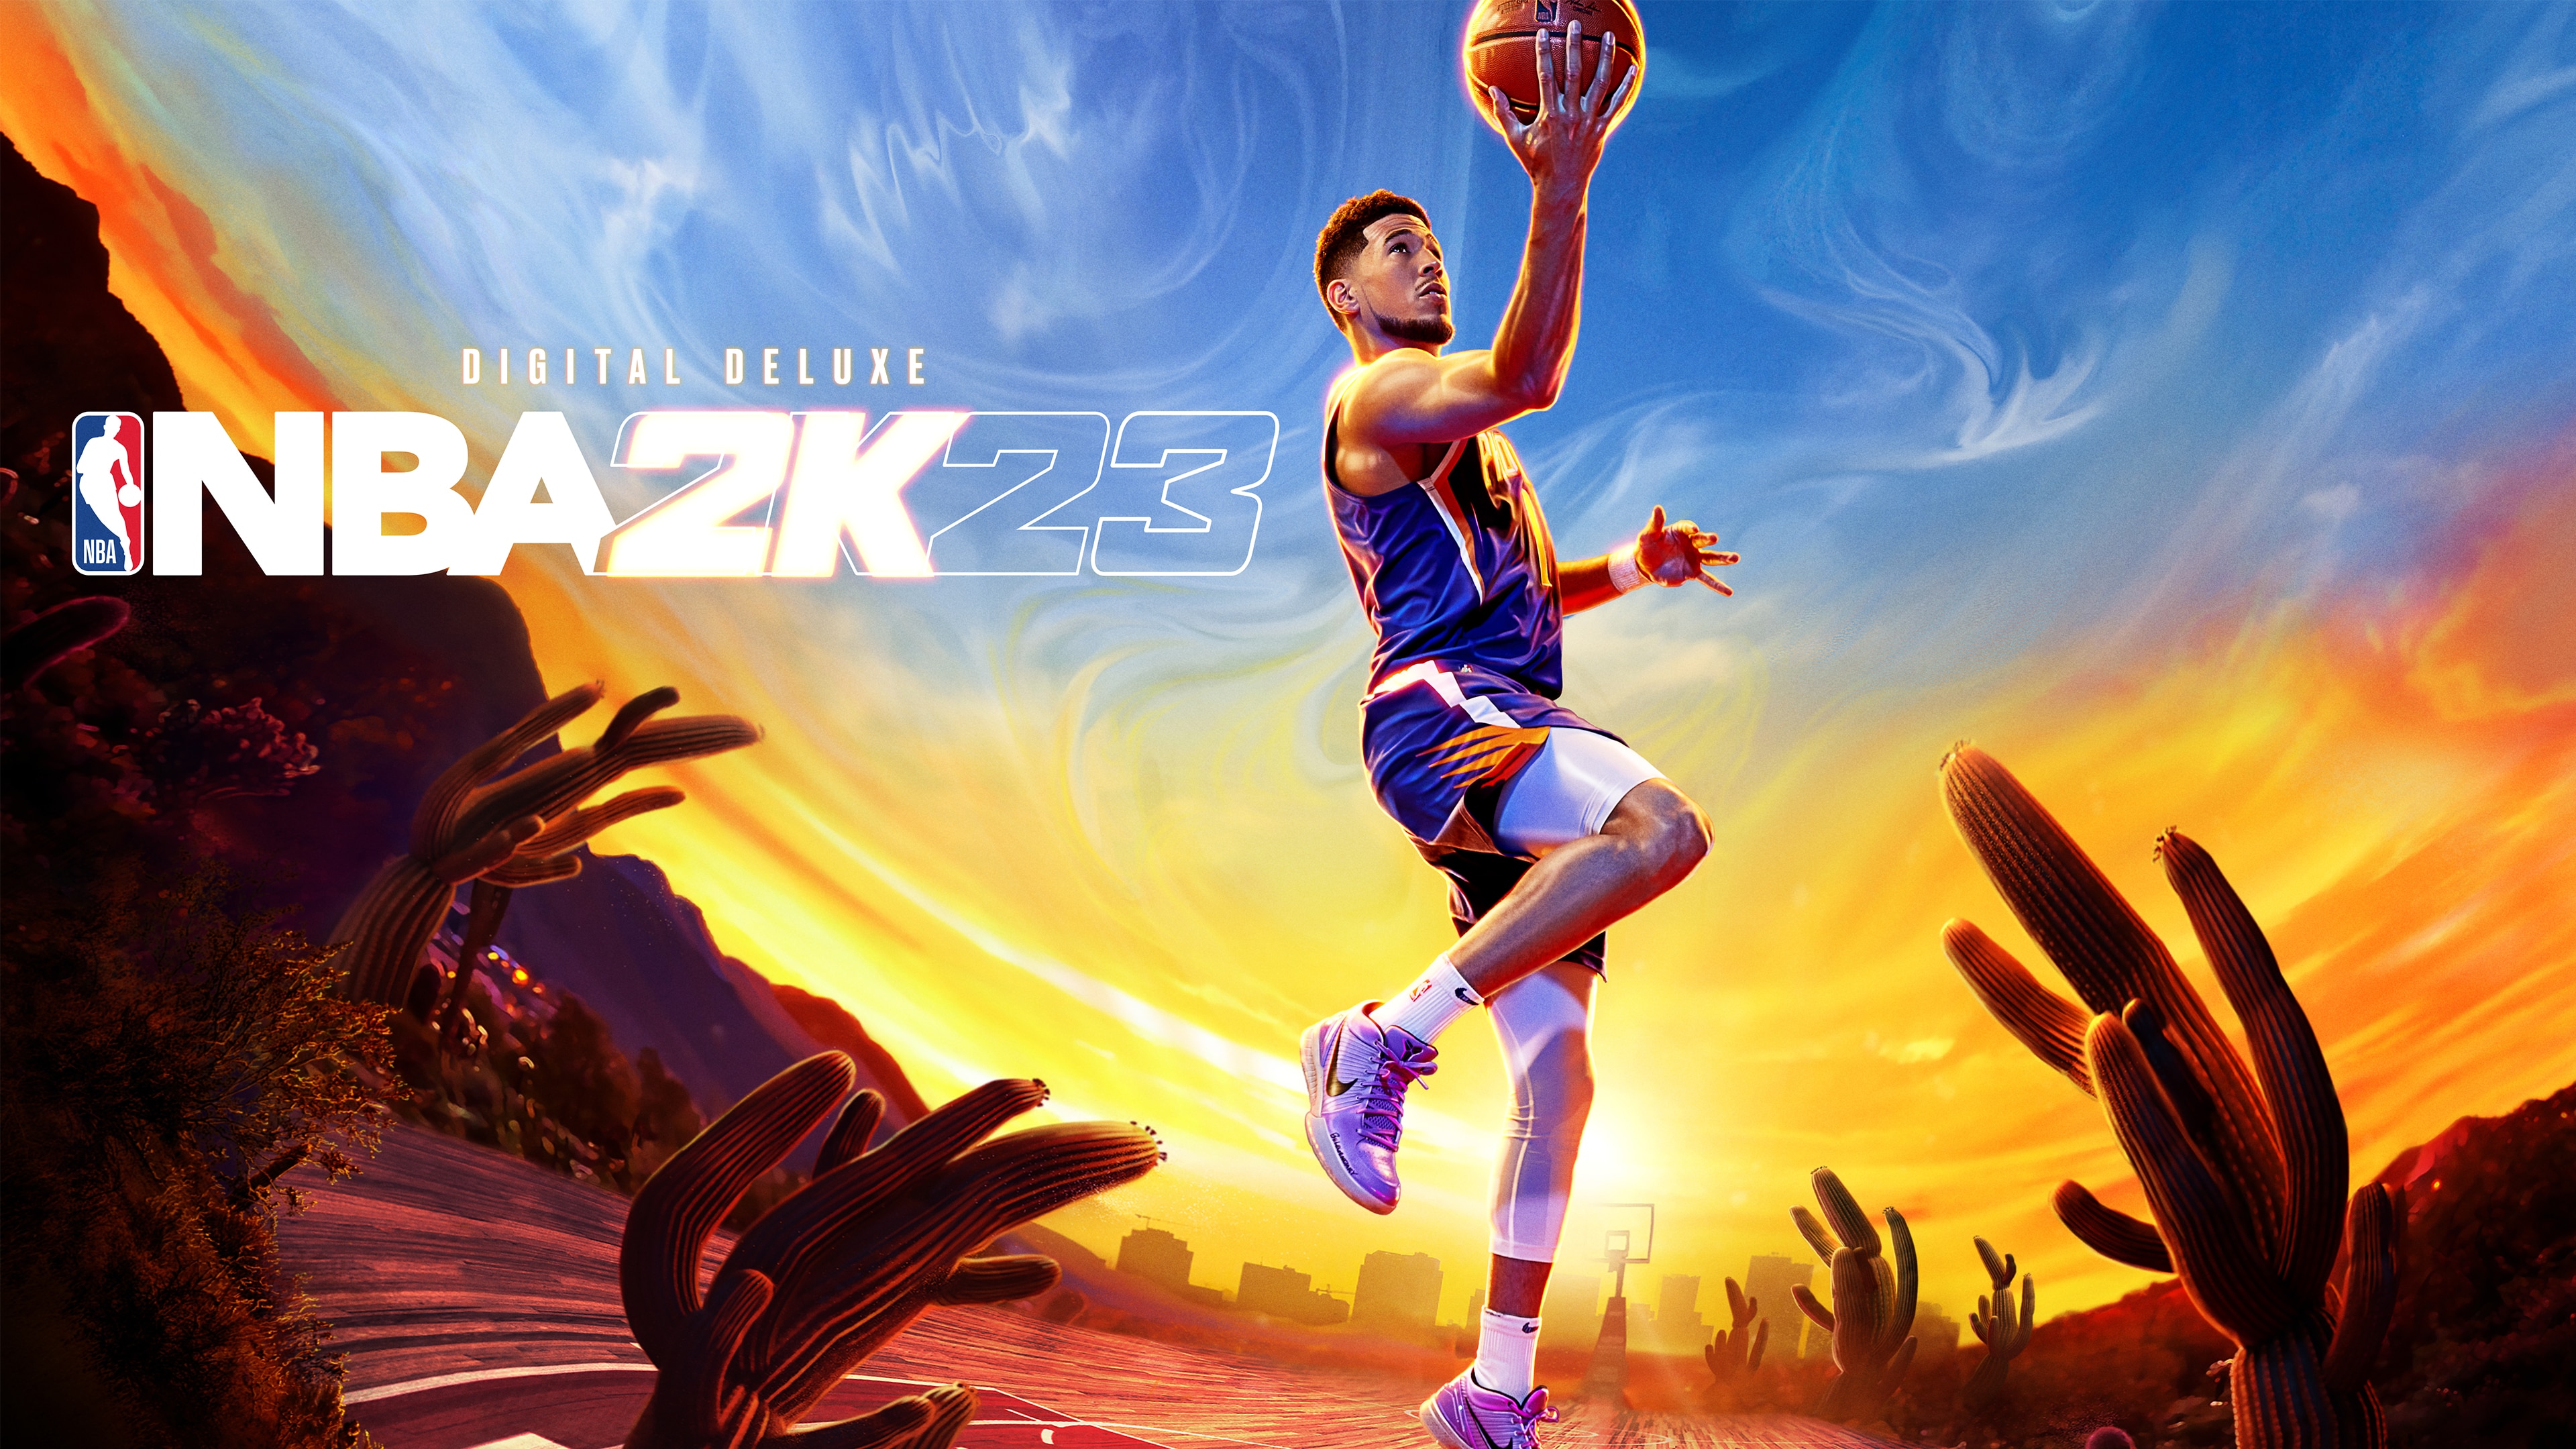 Tận hưởng cảm giác sống động nhất với NBA 2K23 4k Ultra HD wallpaper. Với độ phân giải sắc nét, bạn sẽ được đắm mình trong không gian bóng rổ tuyệt đẹp, những ngôi sao nổi tiếng cùng trang phục đầy phong cách. Ảnh nền hoàn hảo dành cho những fan cuồng của bóng rổ.